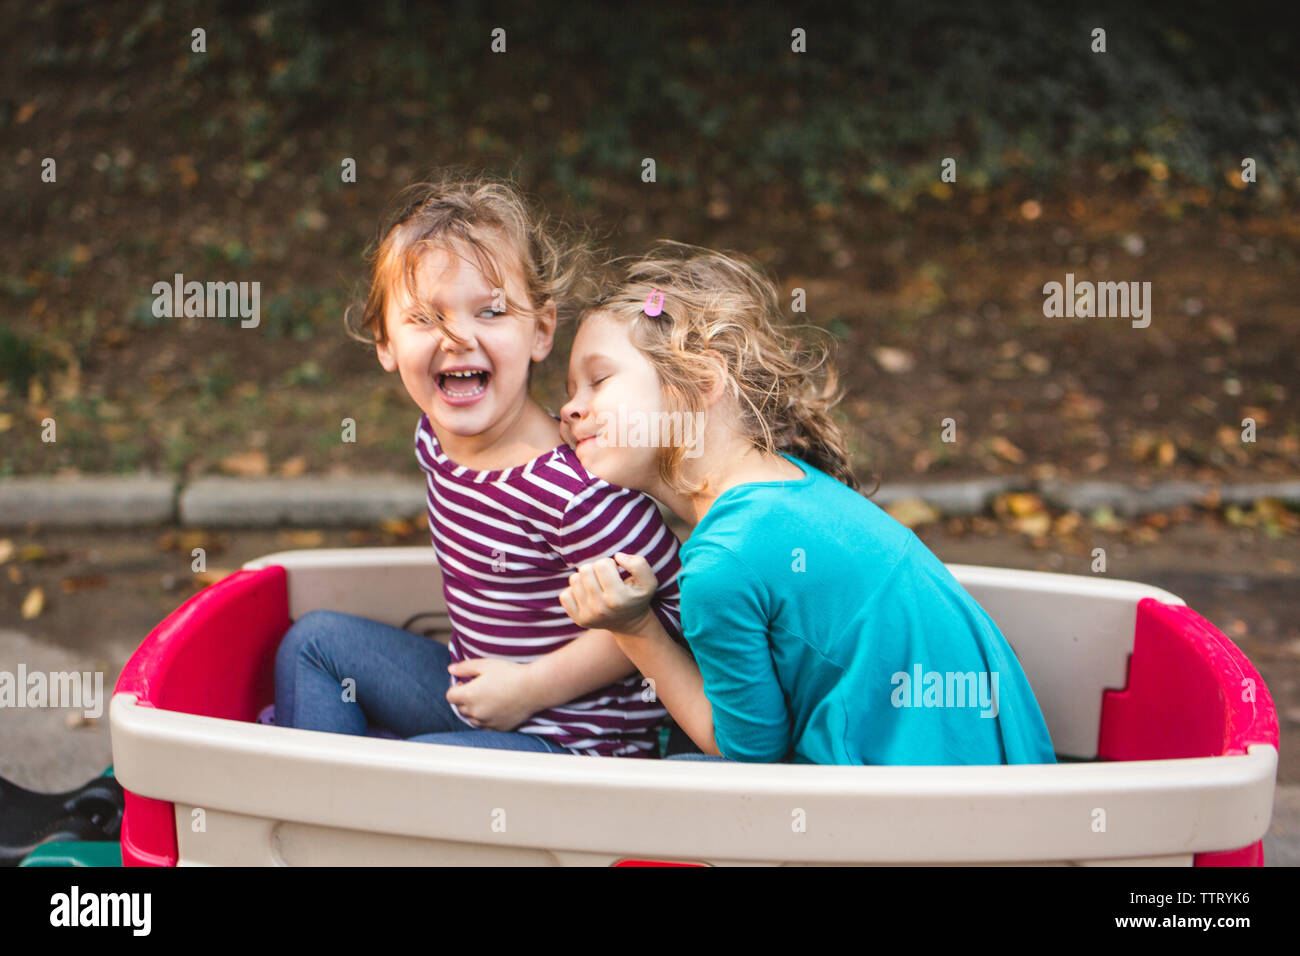 Zwei glückliche kleine Mädchen Hug in einem Wagen auf einer Familie zu Fuß Stockfoto